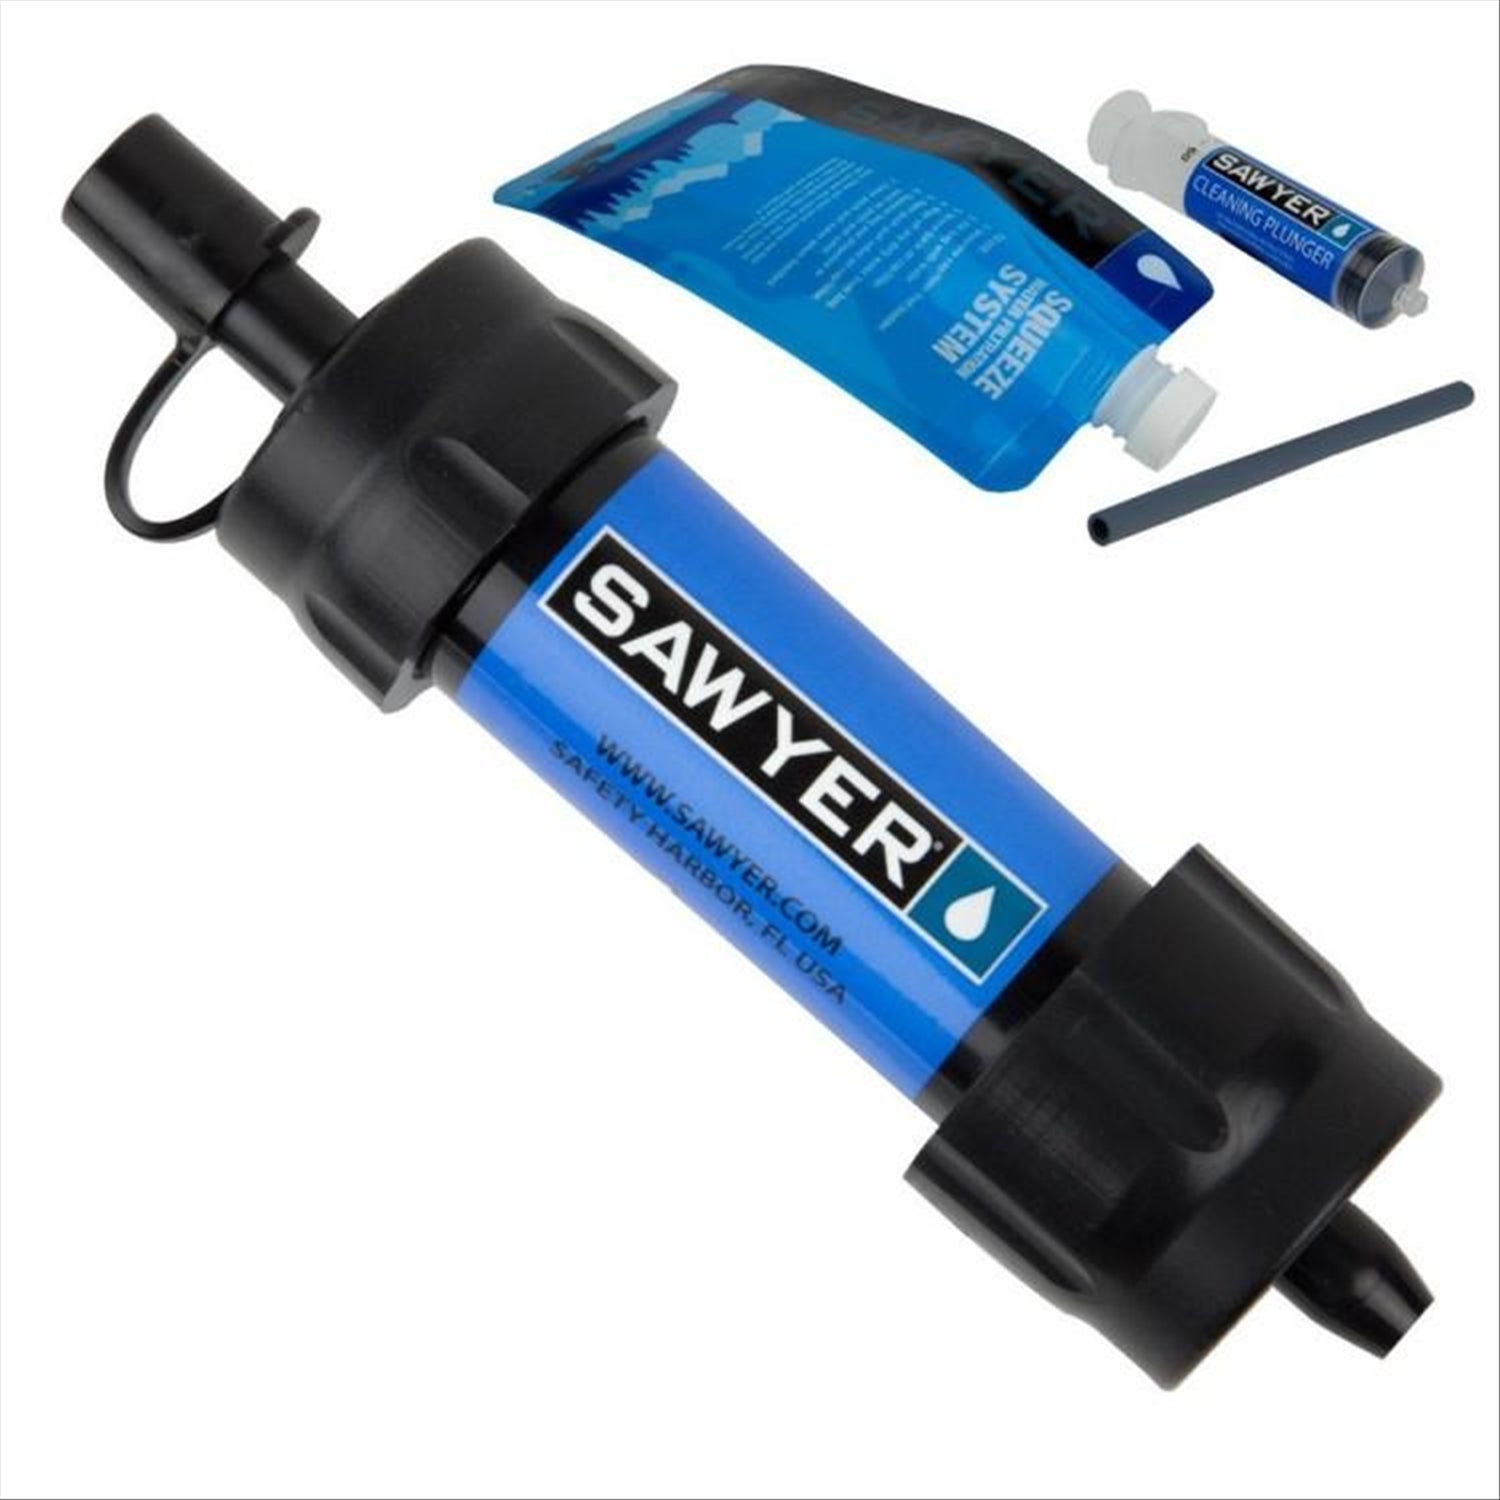 Sawyer Sawyer Mini Water Filtration System